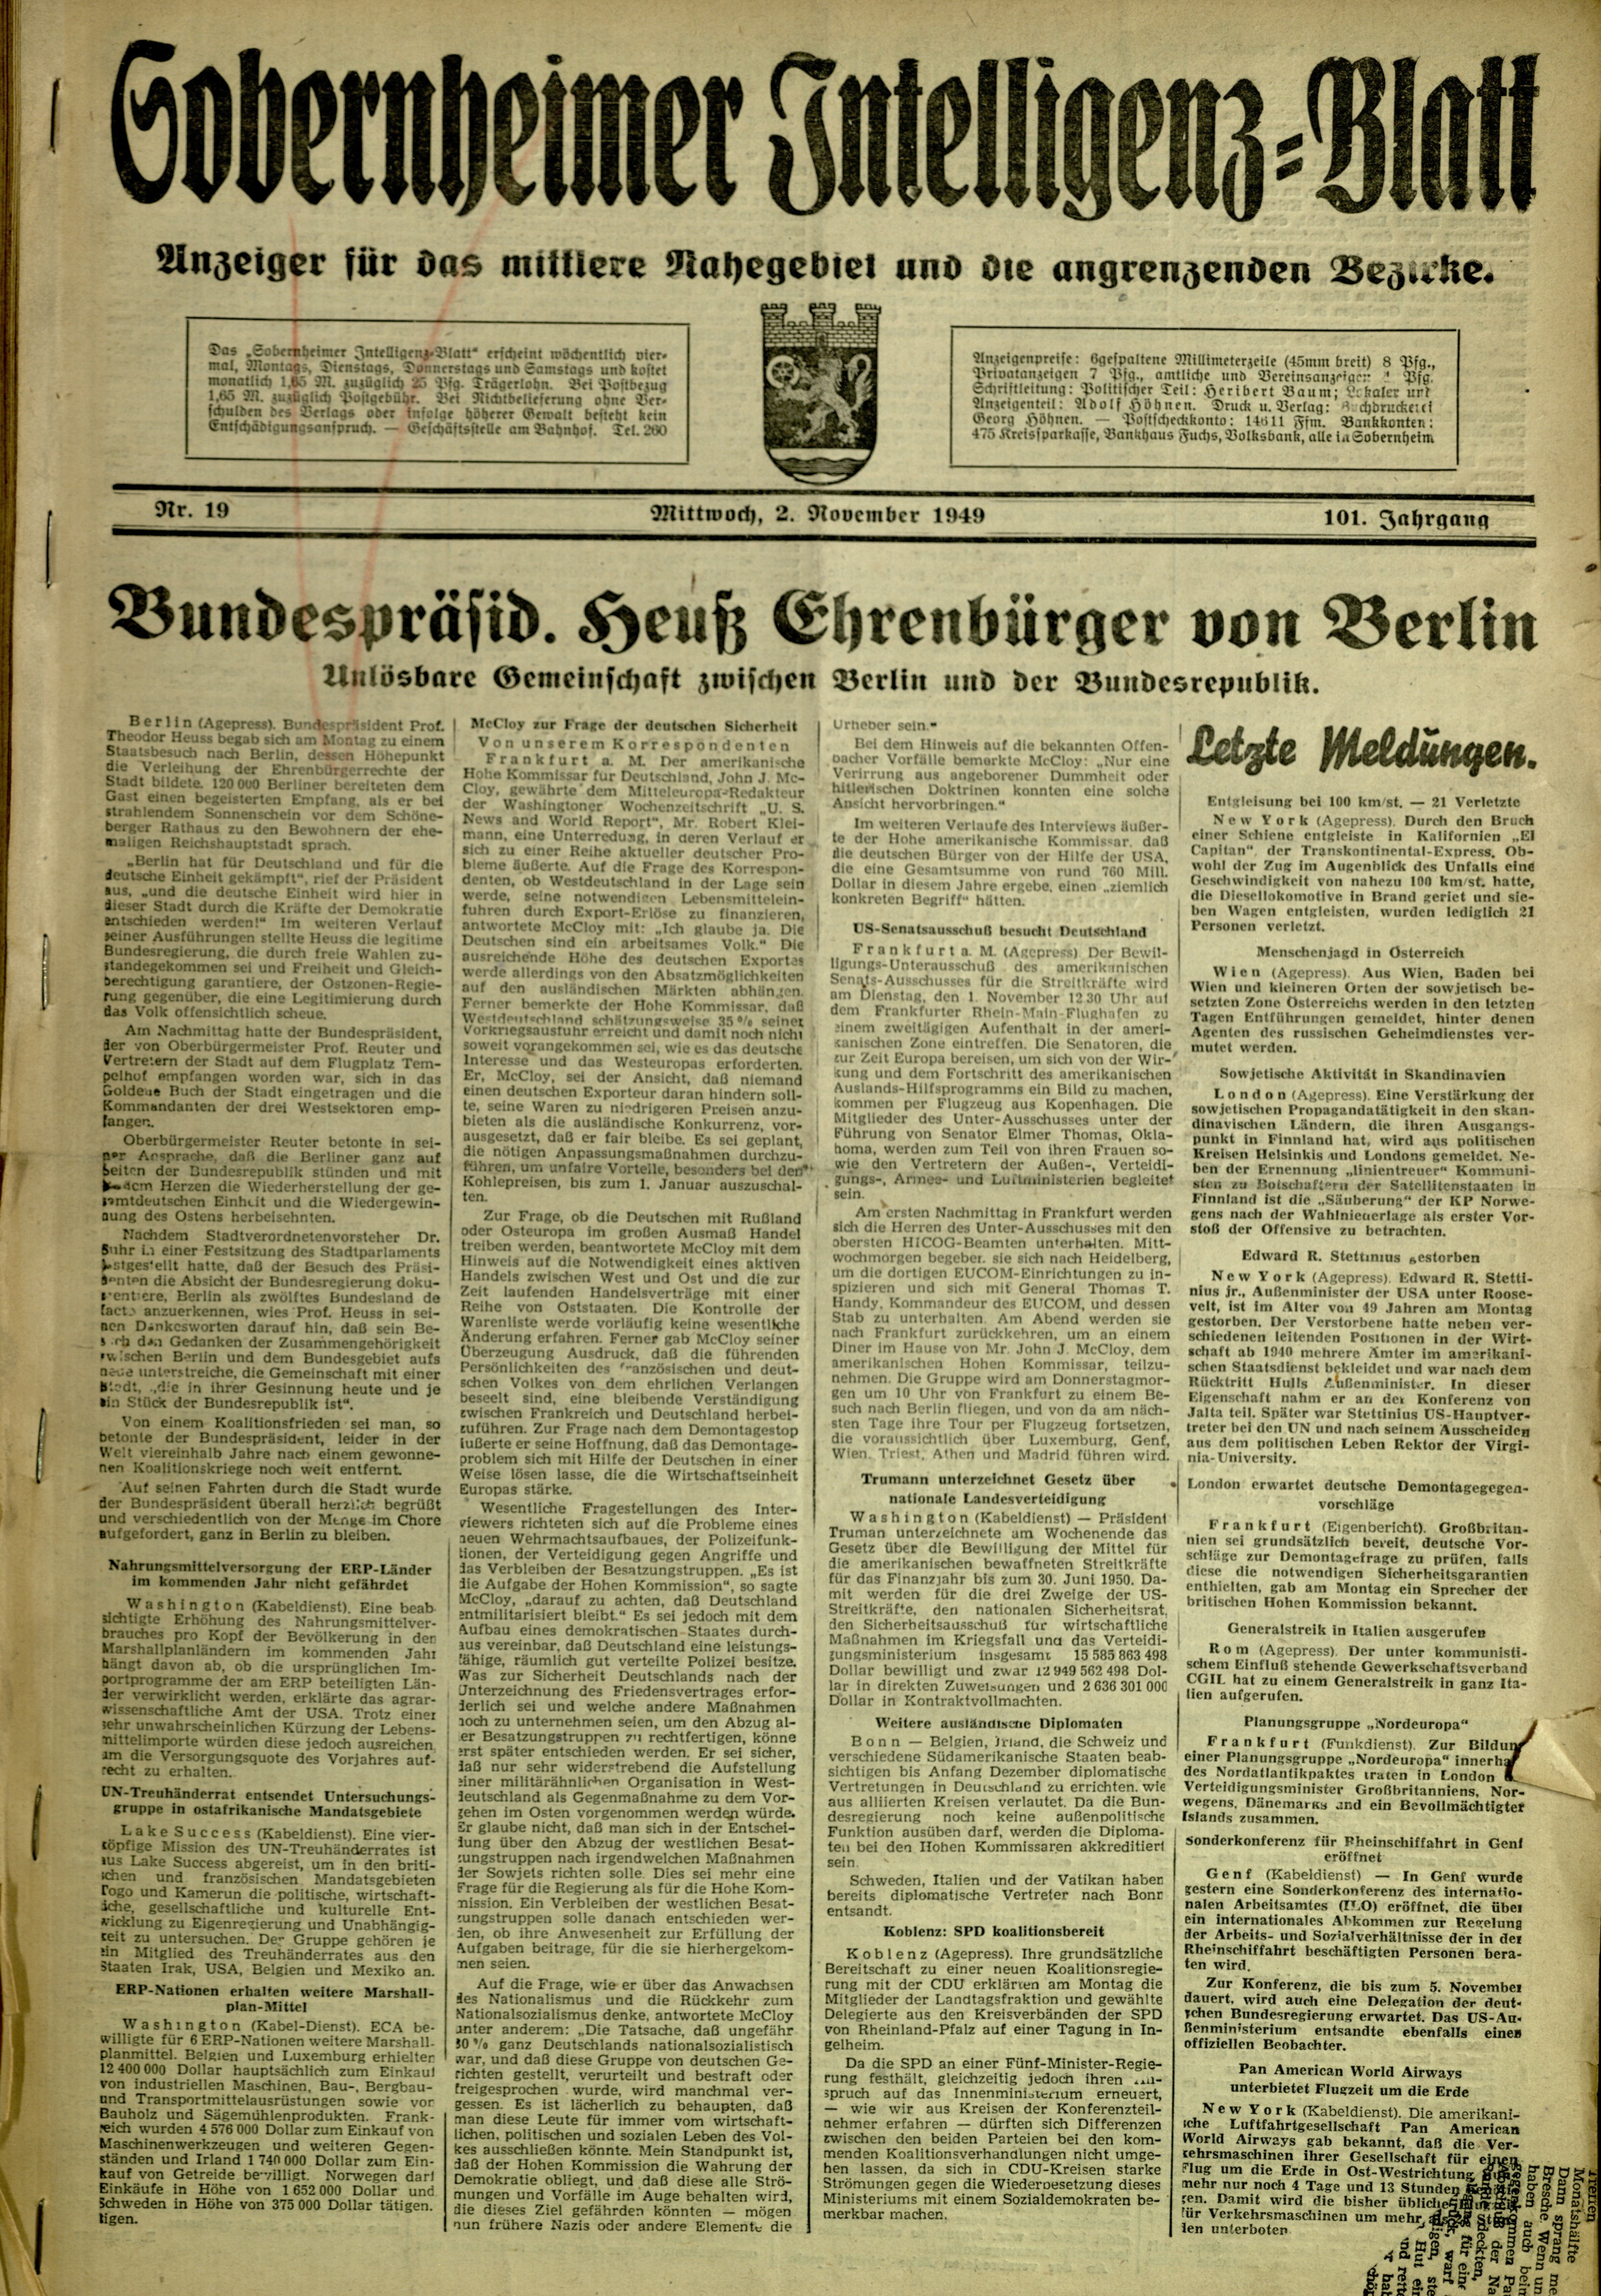 Zeitung: Sobernheimer Intelligenzblatt; November 1949, Jg. 101 Nr. 19 (Heimatmuseum Bad Sobernheim CC BY-NC-SA)